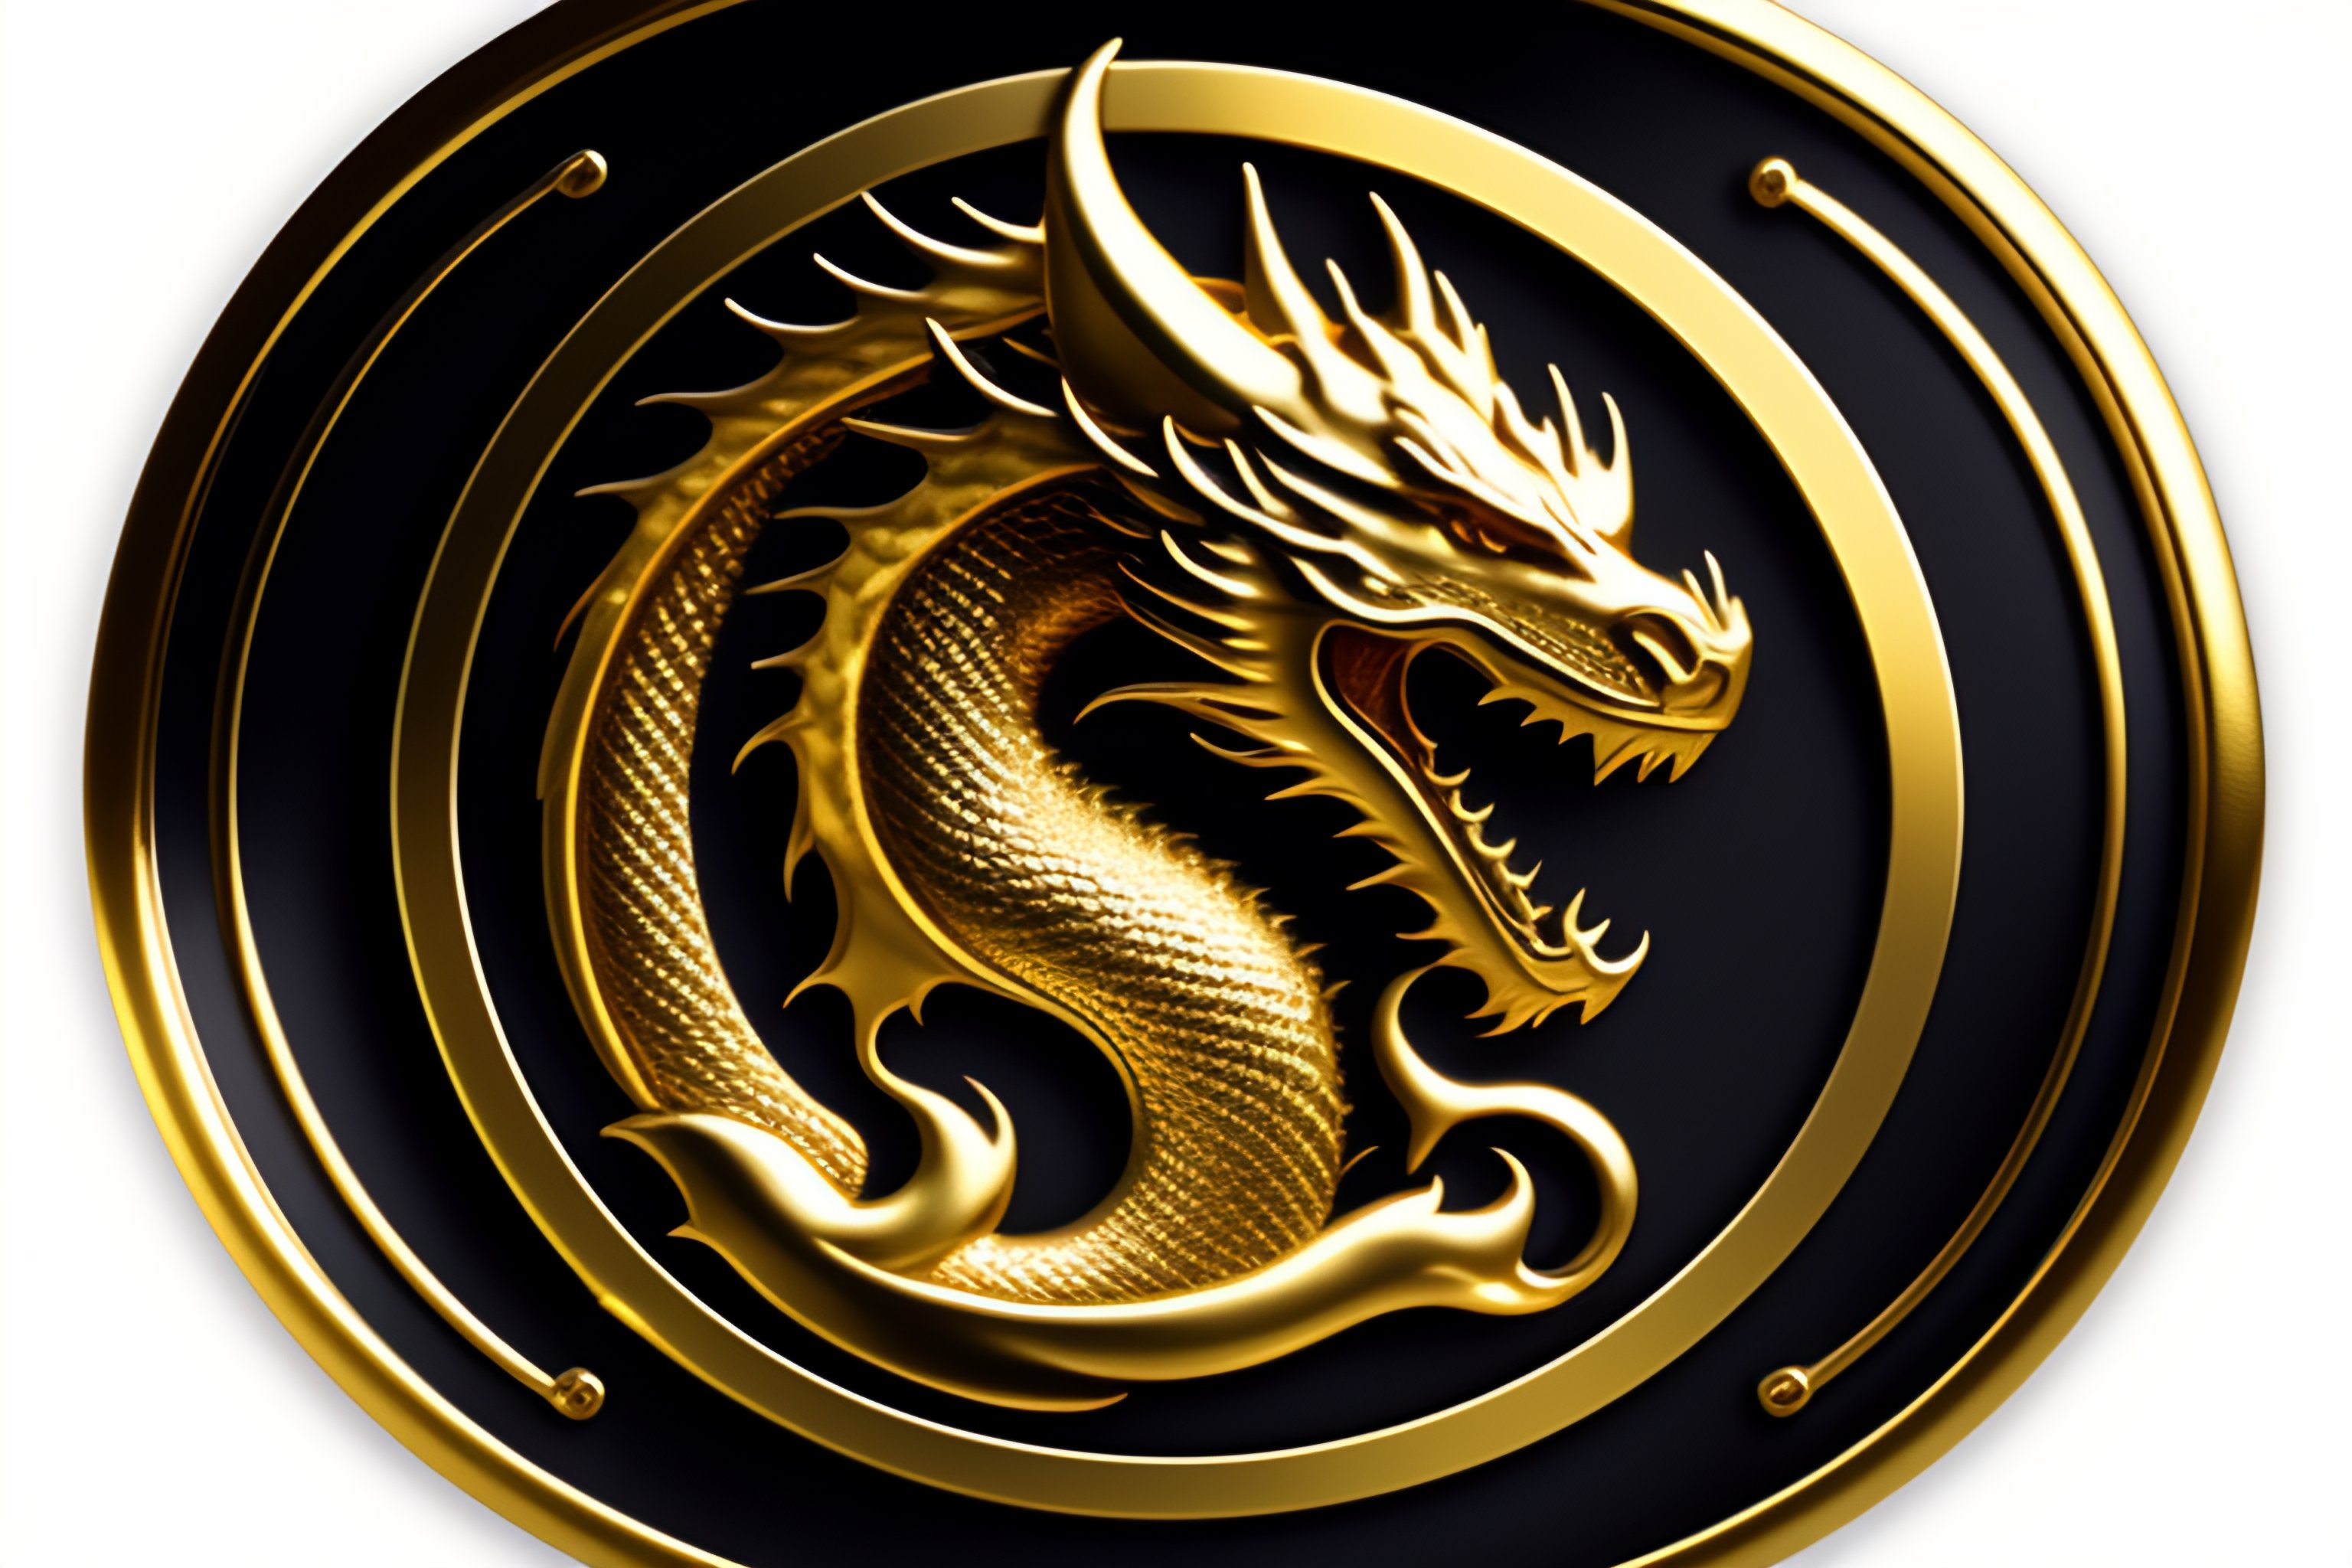 Golden Dragon Logo